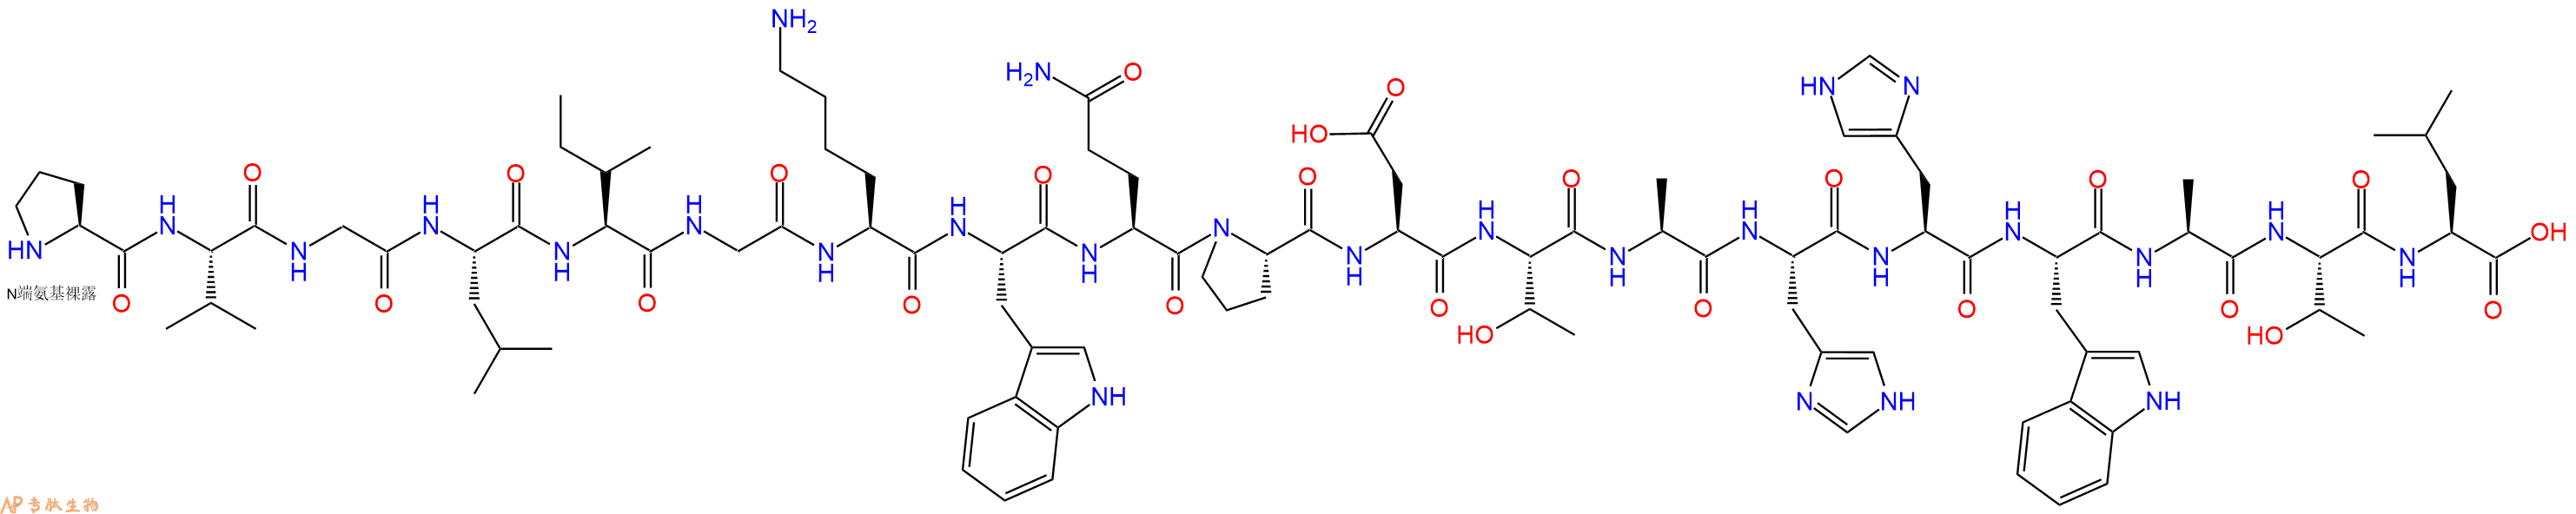 专肽生物产品十九肽PVGLIGKWQPDTAHHWATL